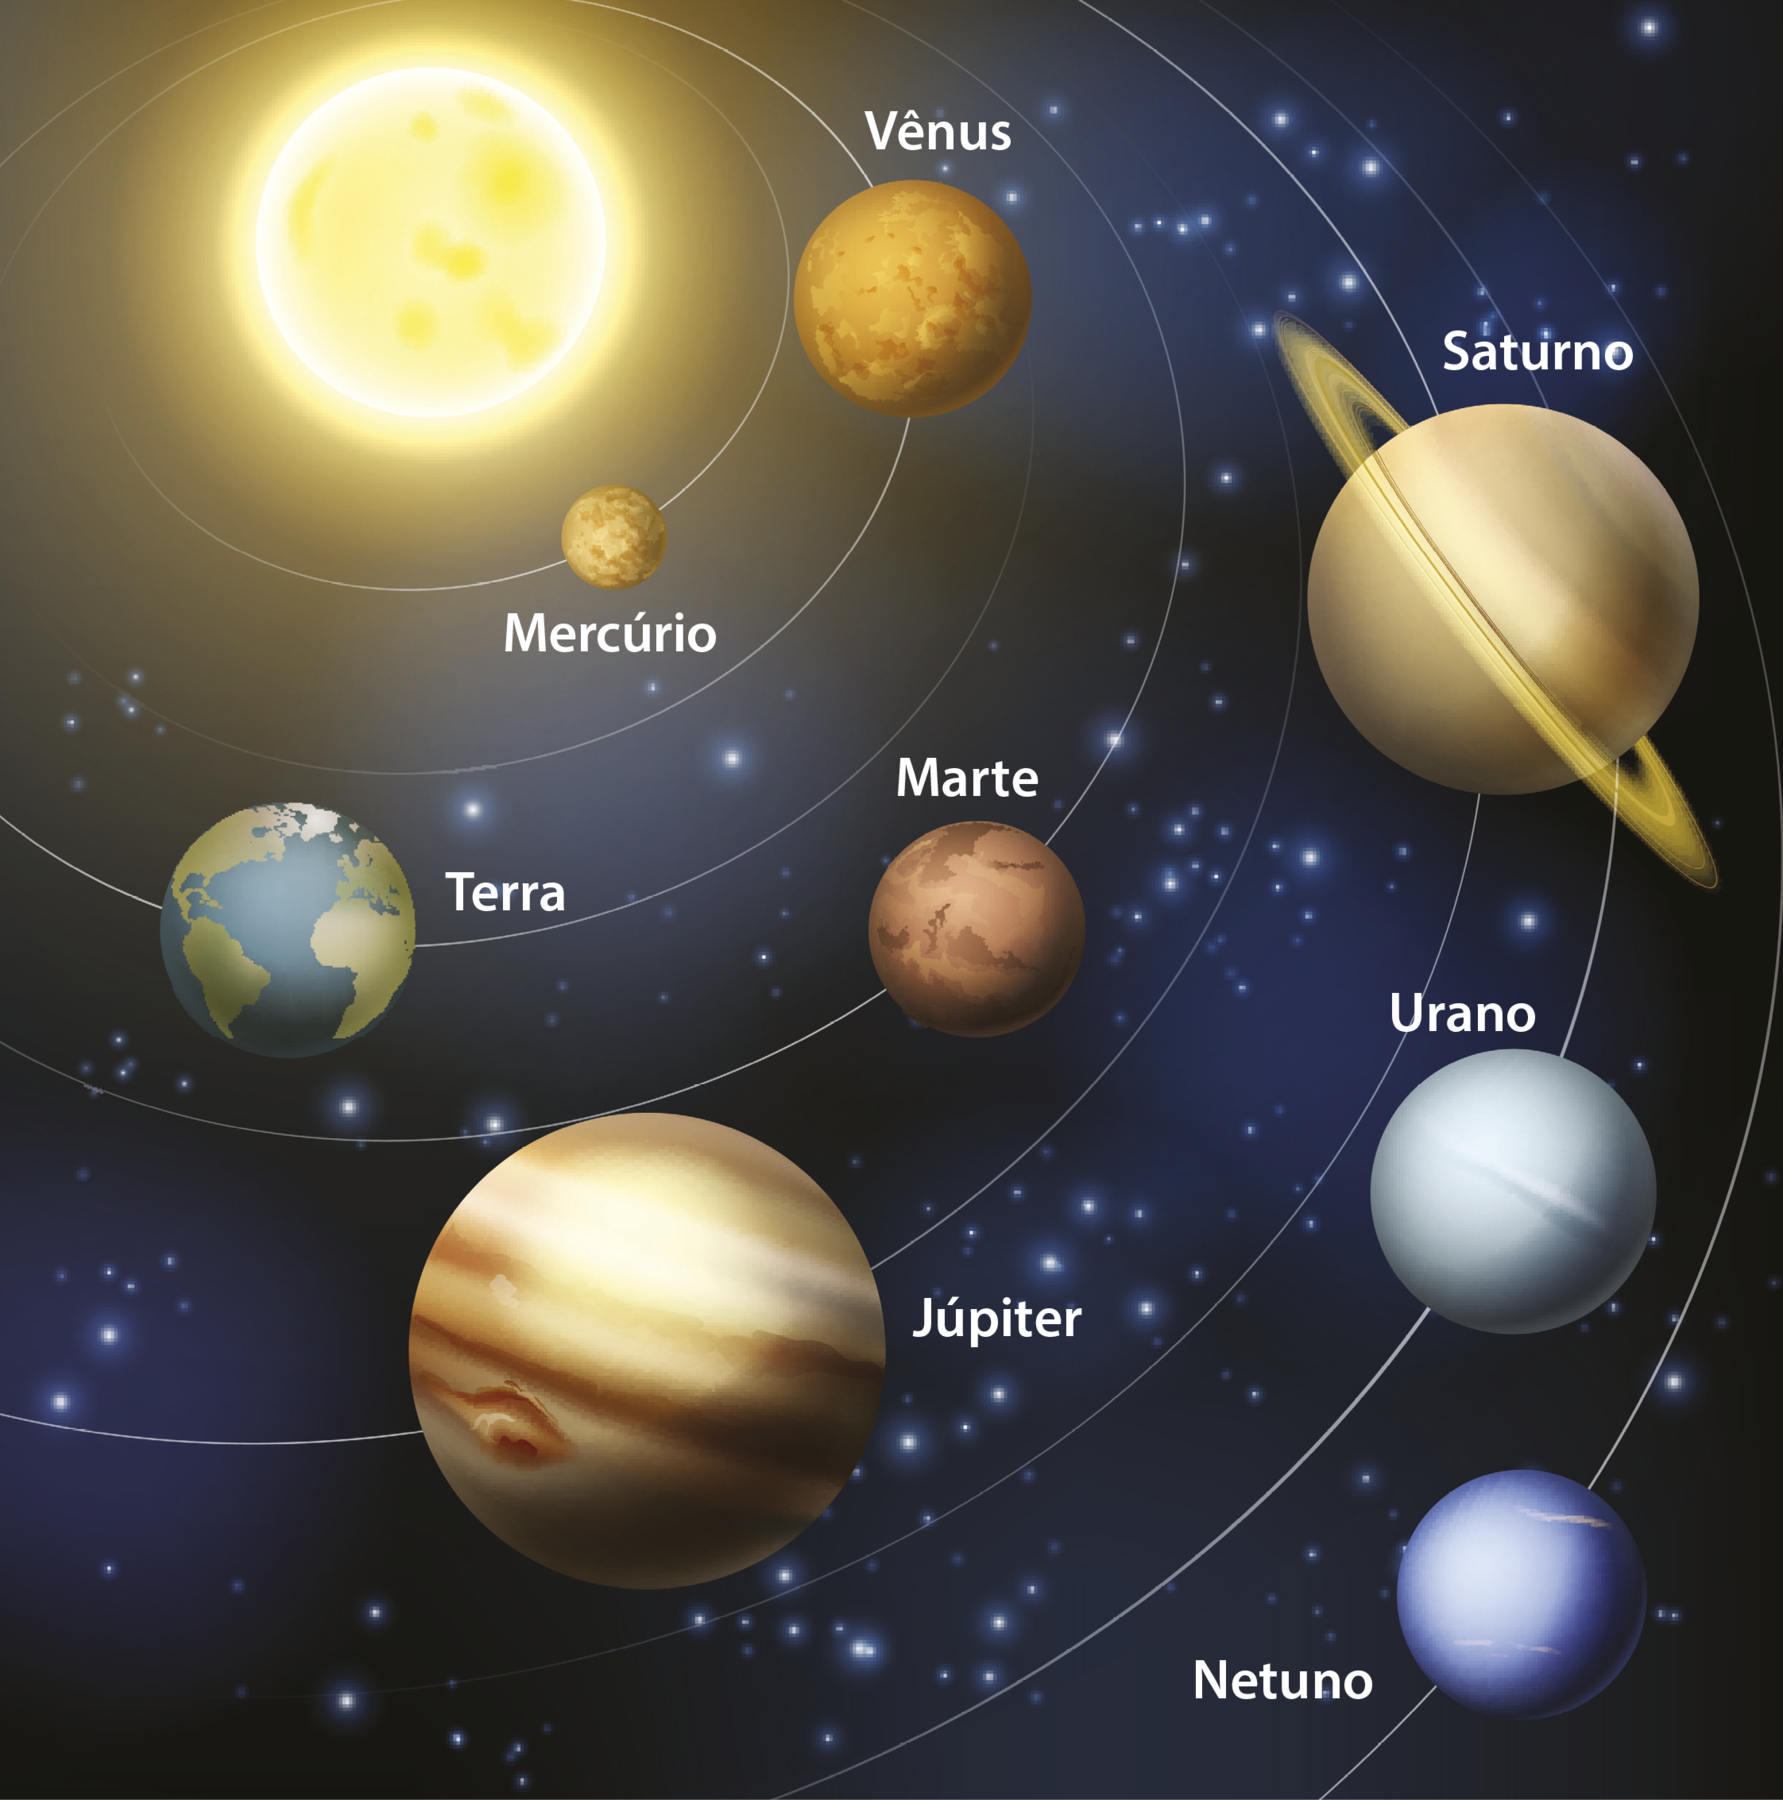 Ilustração. Representação do Sistema Solar, composto pelos 8 planetas, cada um com um traçado branco e circular caracterizando suas órbitas e com seus respectivos nomes: Mercúrio, Vênus, Terra, Marte, Júpiter, Saturno, Urano e Netuno. O Sol, esfera amarela e brilhante, está posicionado no canto esquerdo superior. Em seguida, o planeta Mercúrio, o menor quando comparado aos demais, é amarronzado e está posicionado próximo ao Sol. Vênus possui a superfície avermelhada e se posiciona em seguida. A Terra apresenta tamanho similar à Vênus, possui a superfície representada pelas cores azul para os oceanos e verde para os continentes. Marte tem a superfície acobreada e um tamanho ligeiramente menor quando comparado à Terra. Júpiter contém listras em diferentes tons de marrons representando a sua superfície e é o maior planeta. Saturno é amarelado e em volta de si contém anéis o circundando. Urano está posicionado em seguida, e possui a superfície azul acinzentada. Netuno, o último planeta em relação ao Sol, está disposto no canto direito inferior da ilustração, representado em tons de azul.